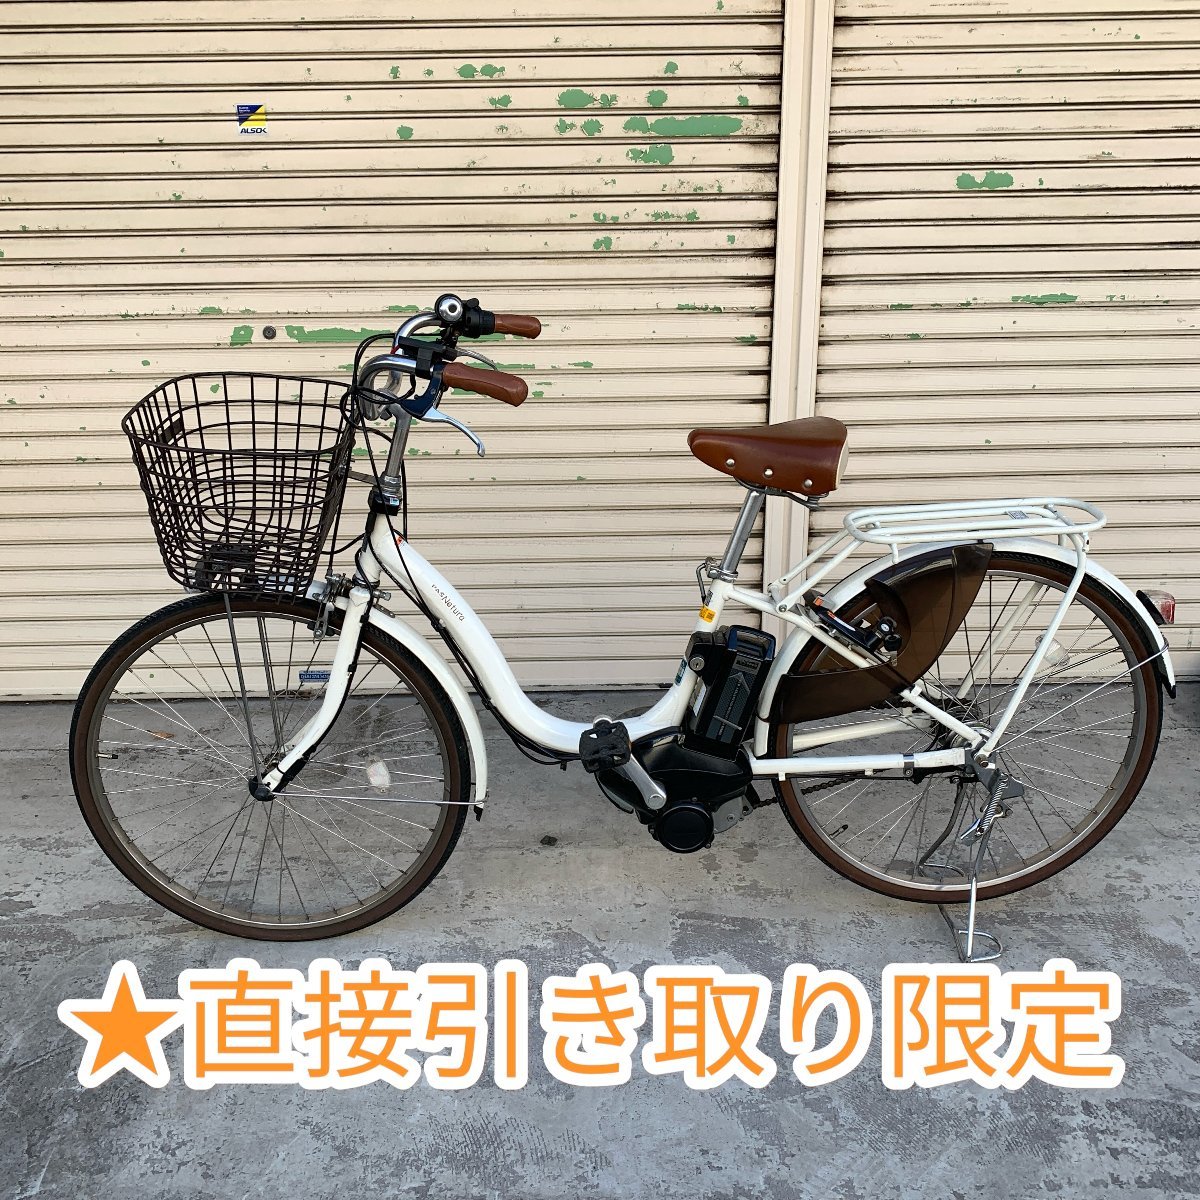 Yahoo!オークション -「yamaha pas ナチュラ」(電動アシスト自転車 